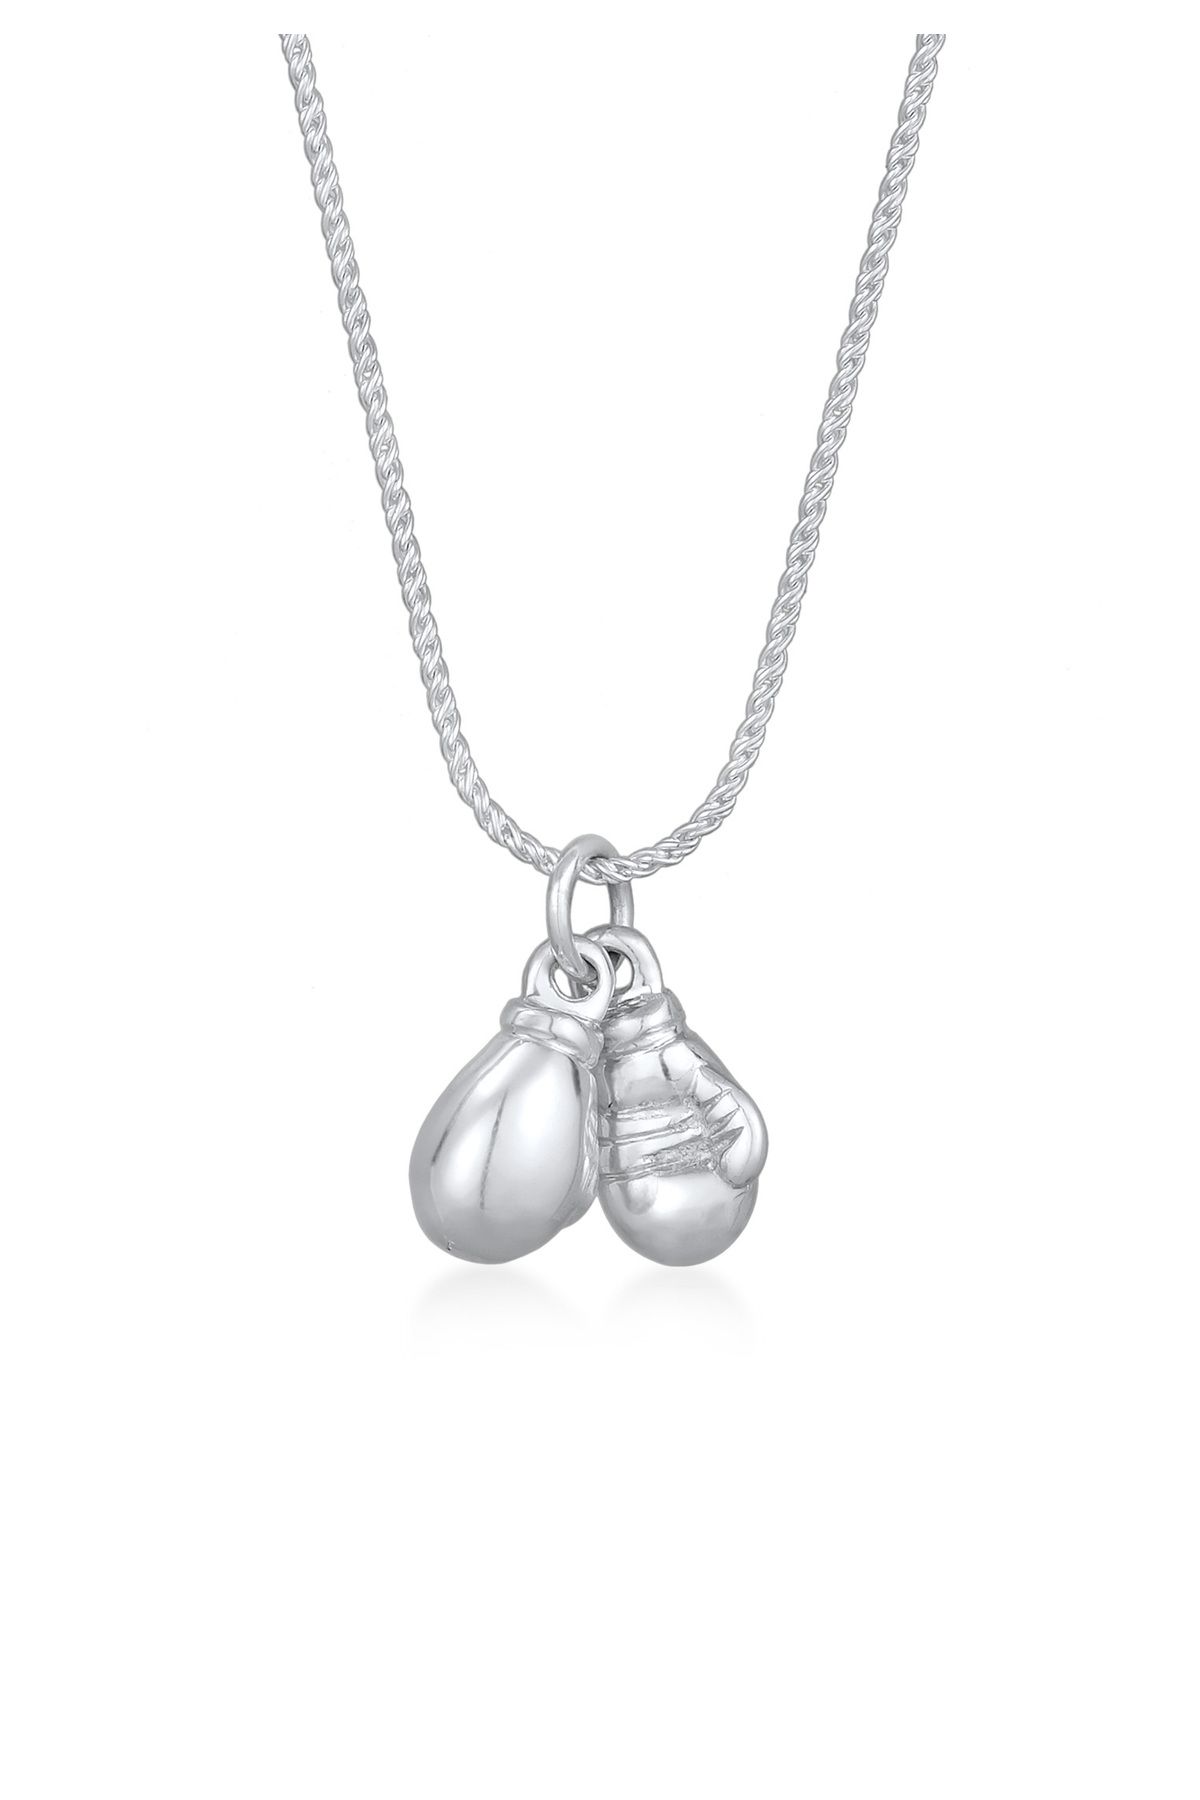 KUZZOI Halskette Boxhandschuhe Modisch Stark Kordelkette Silber - Trendyol 925